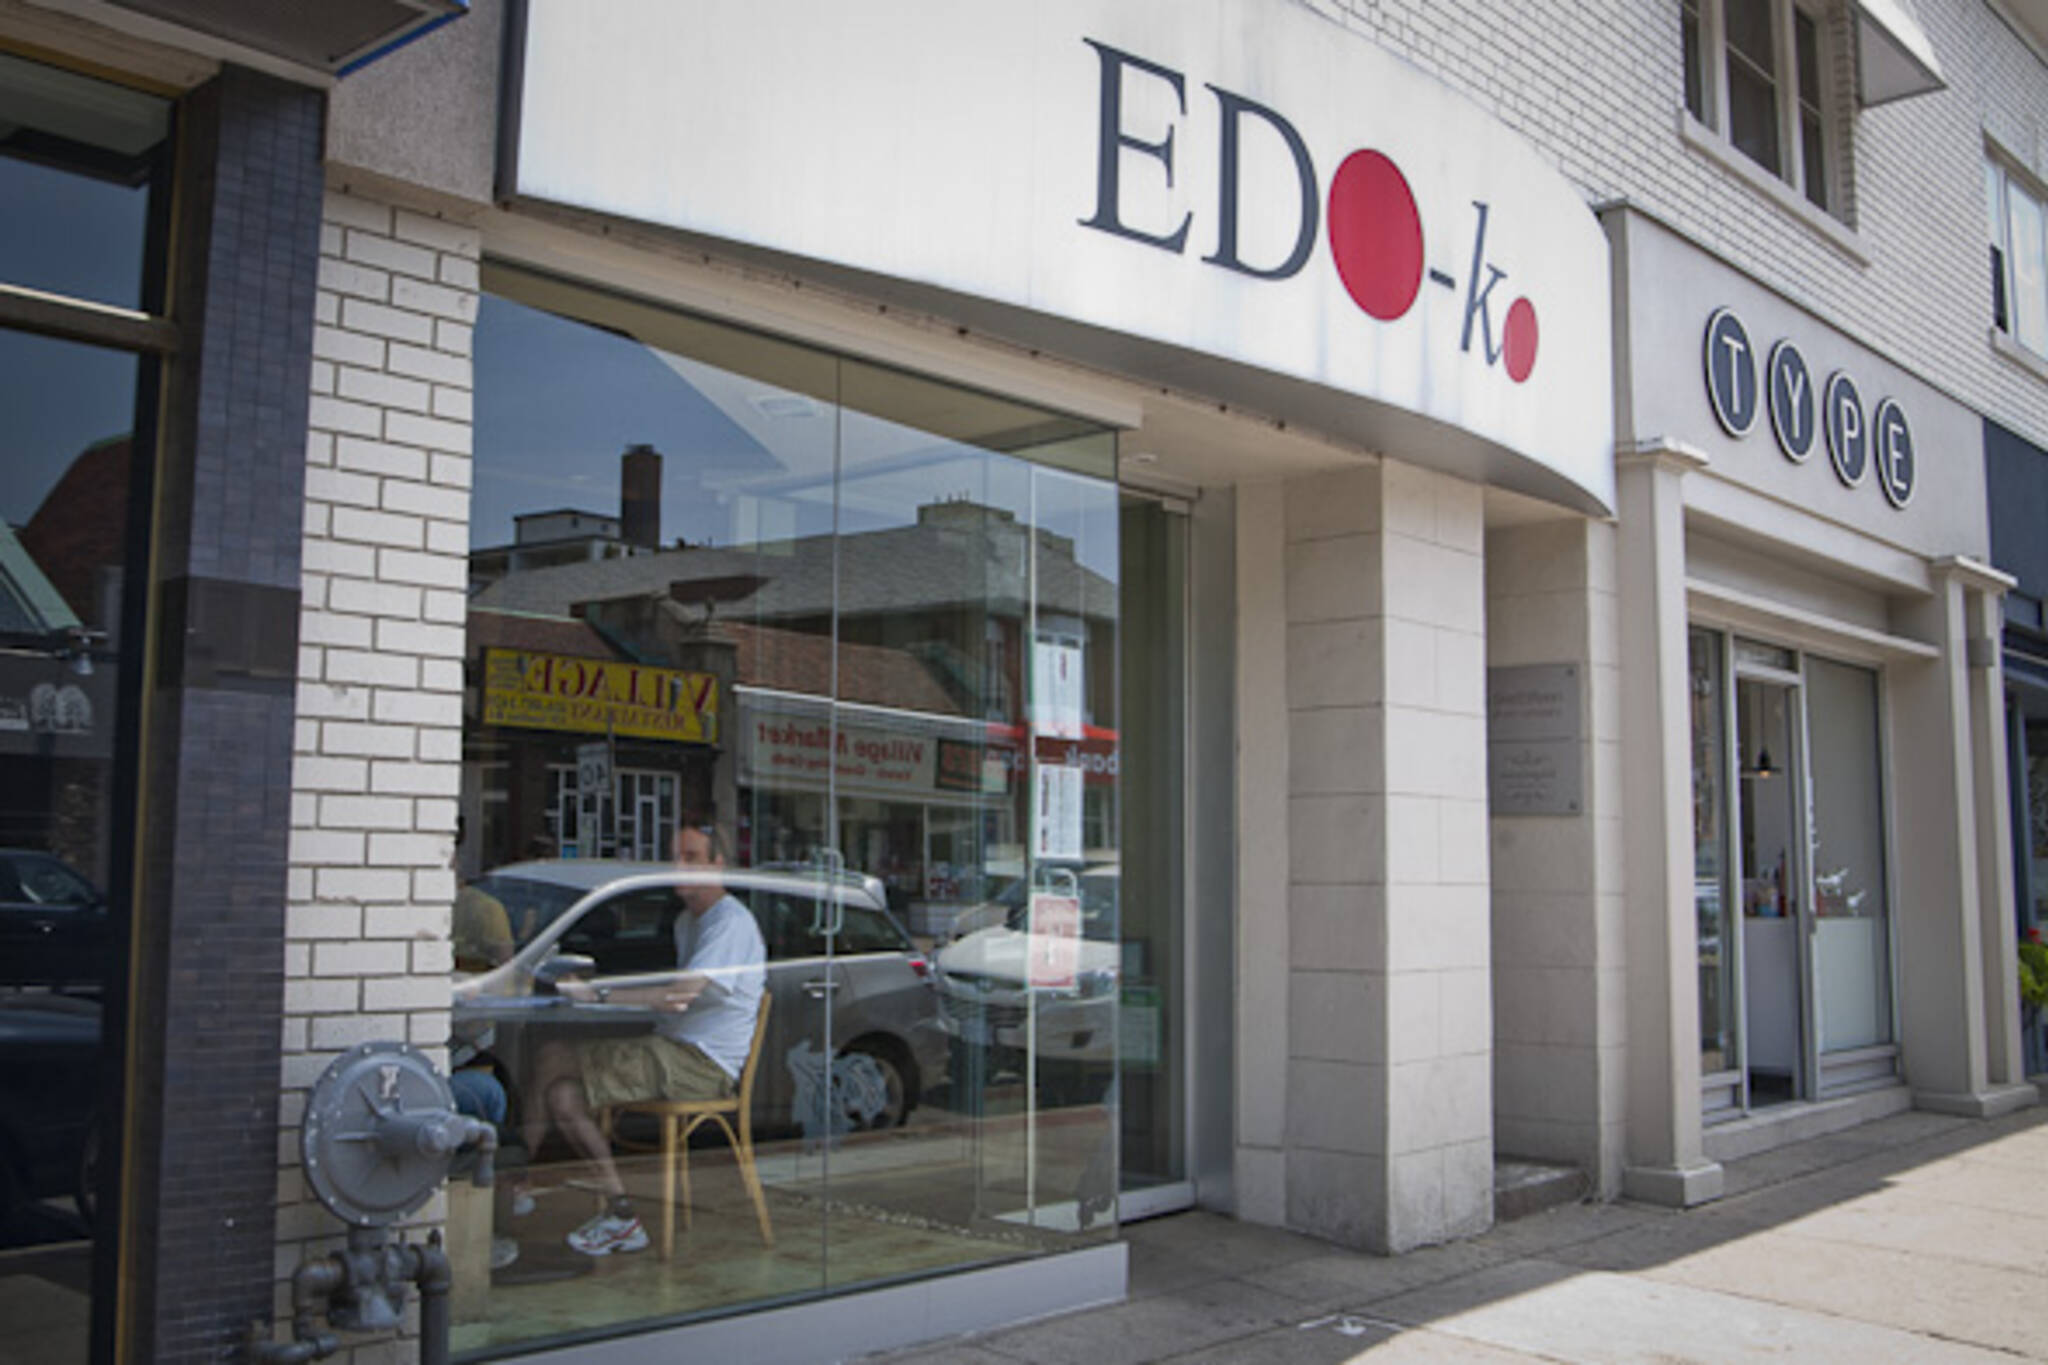 Edo Ko Toronto